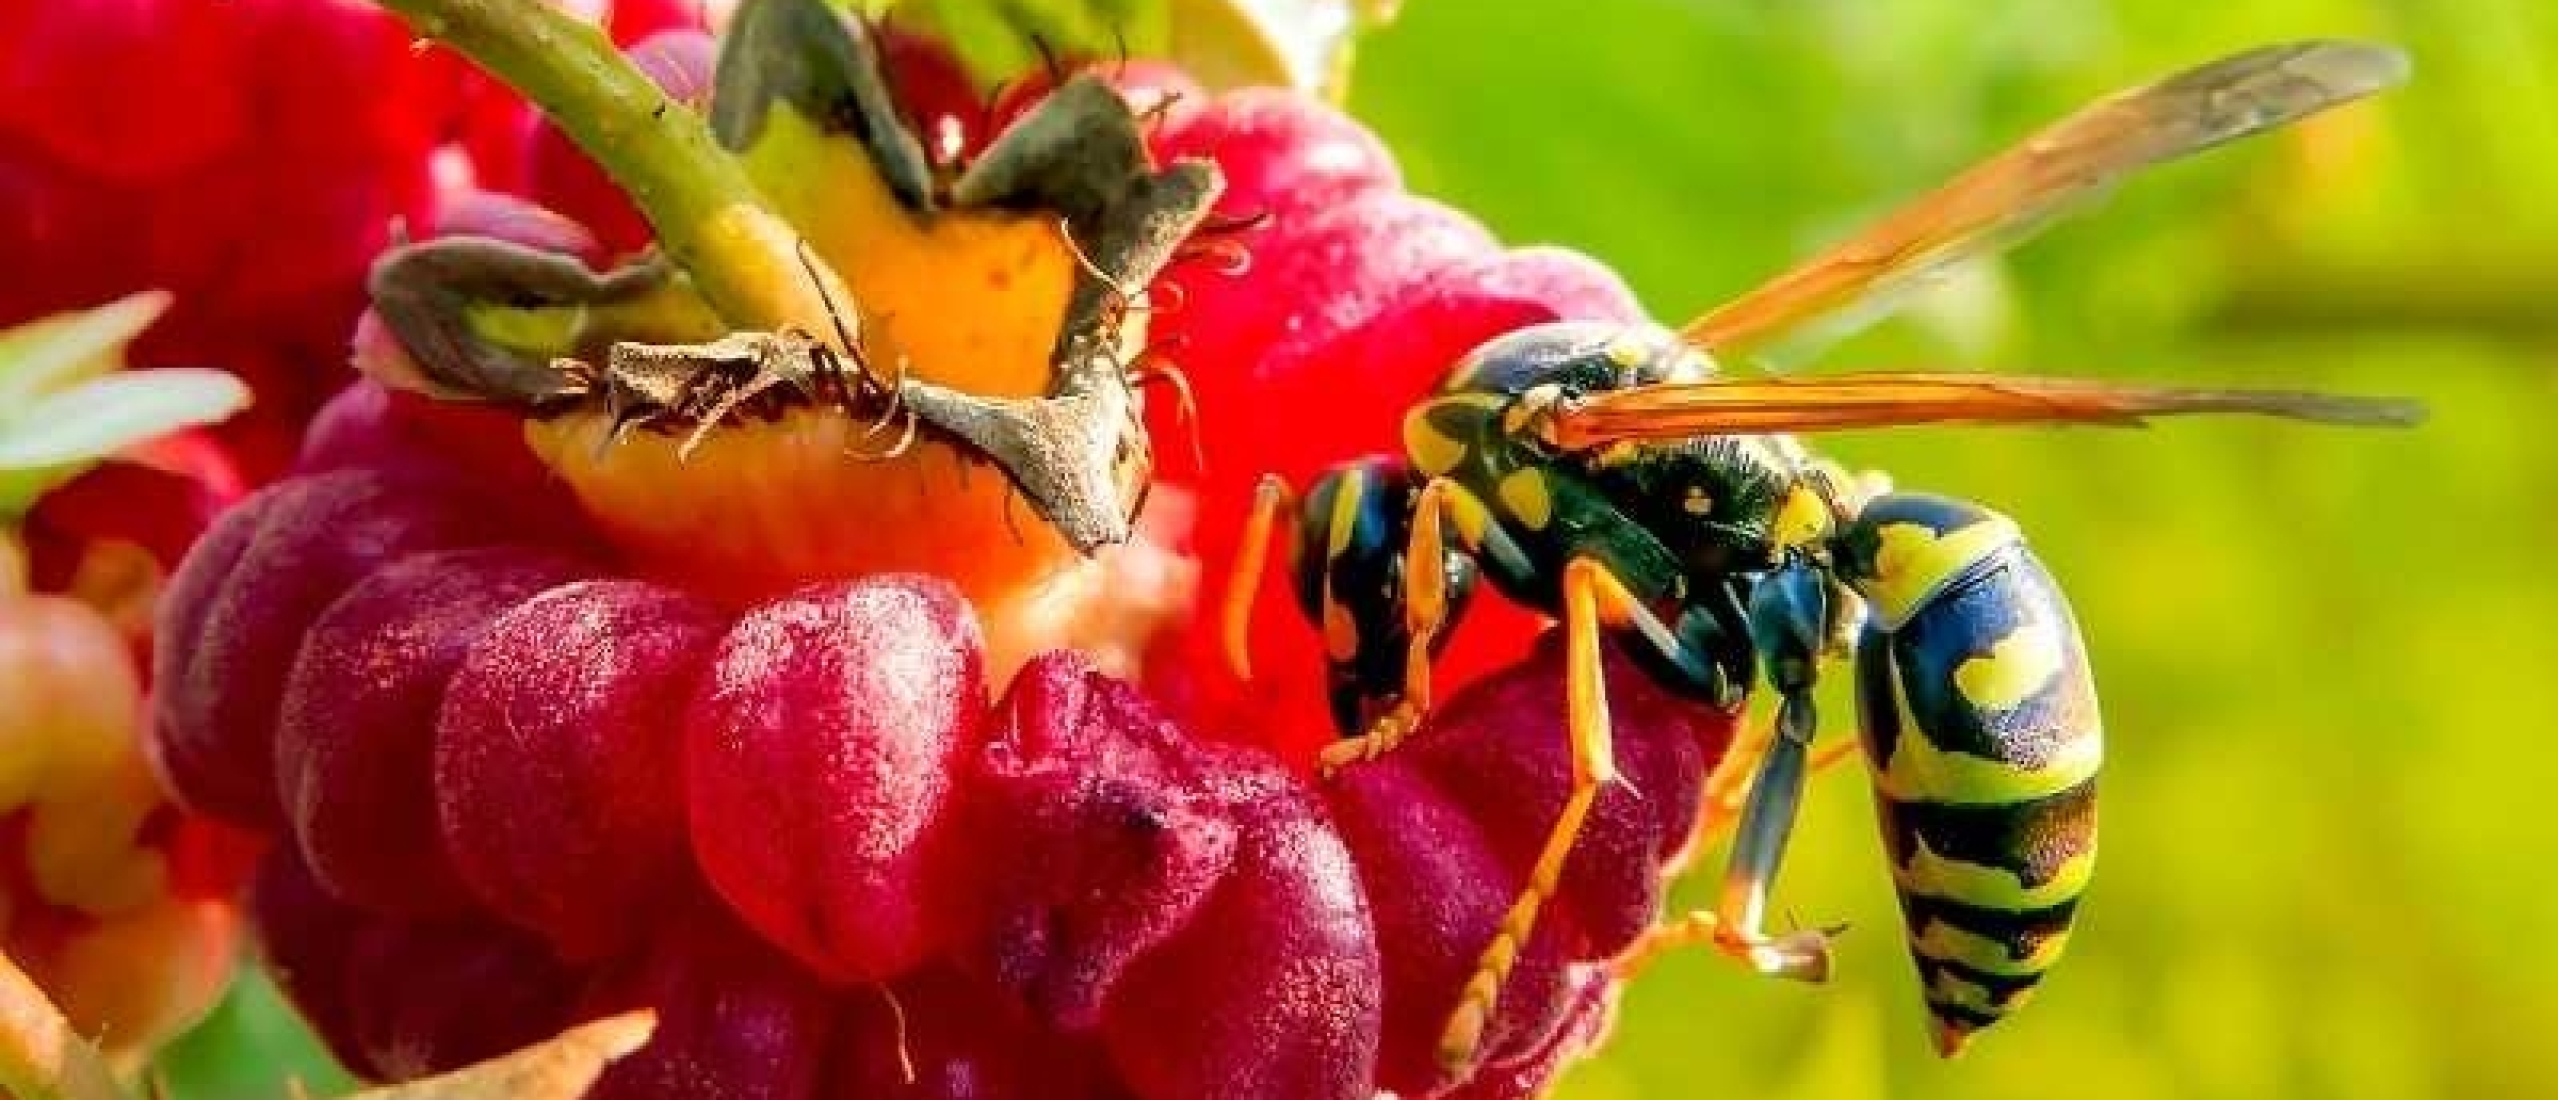 Bloemen voor bijen: welke soorten zijn het meest geschikt?